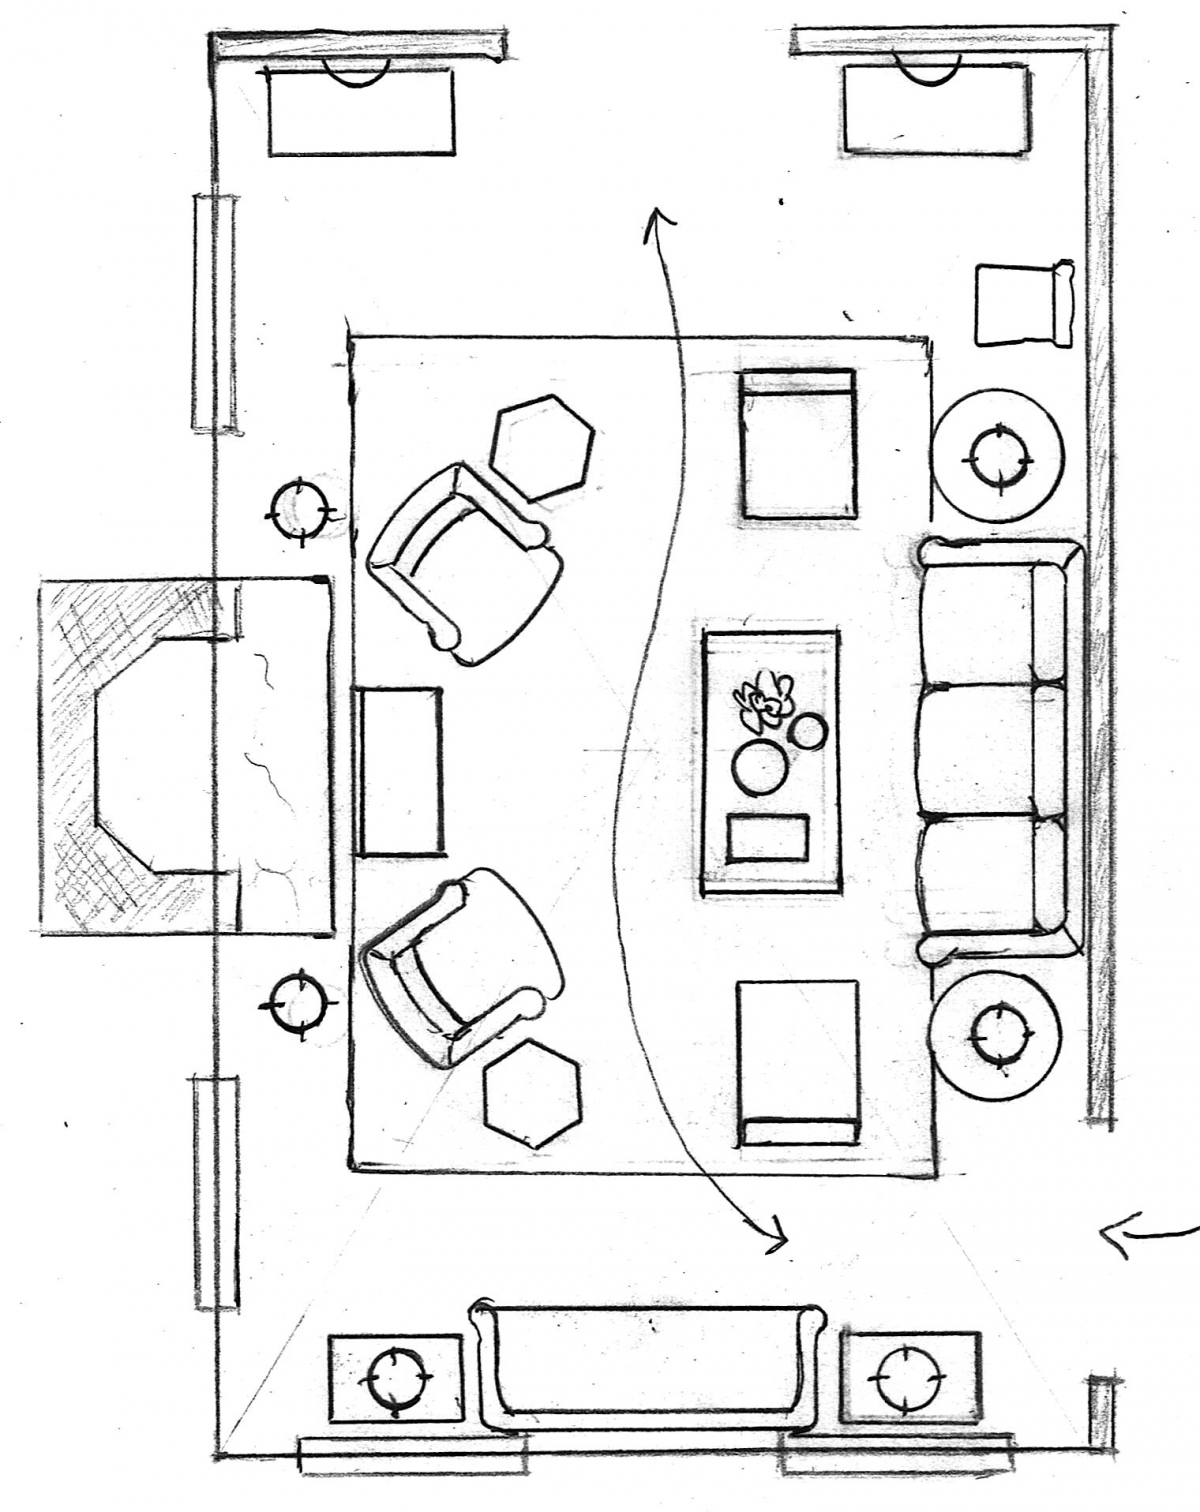 floorplanfurnished living room layout Laurel Home